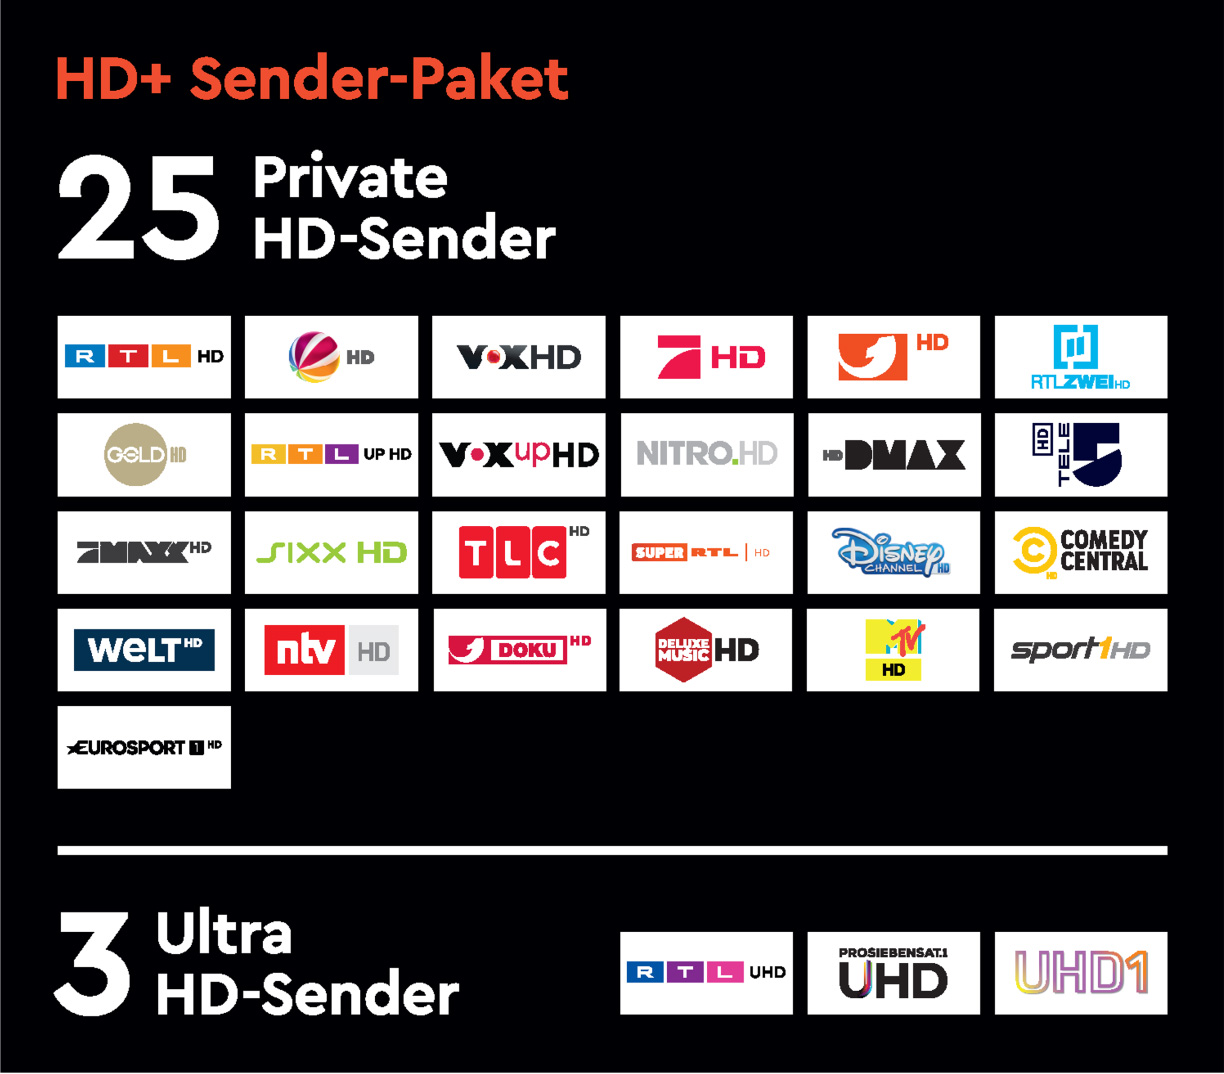 HD+ Sender-Paket